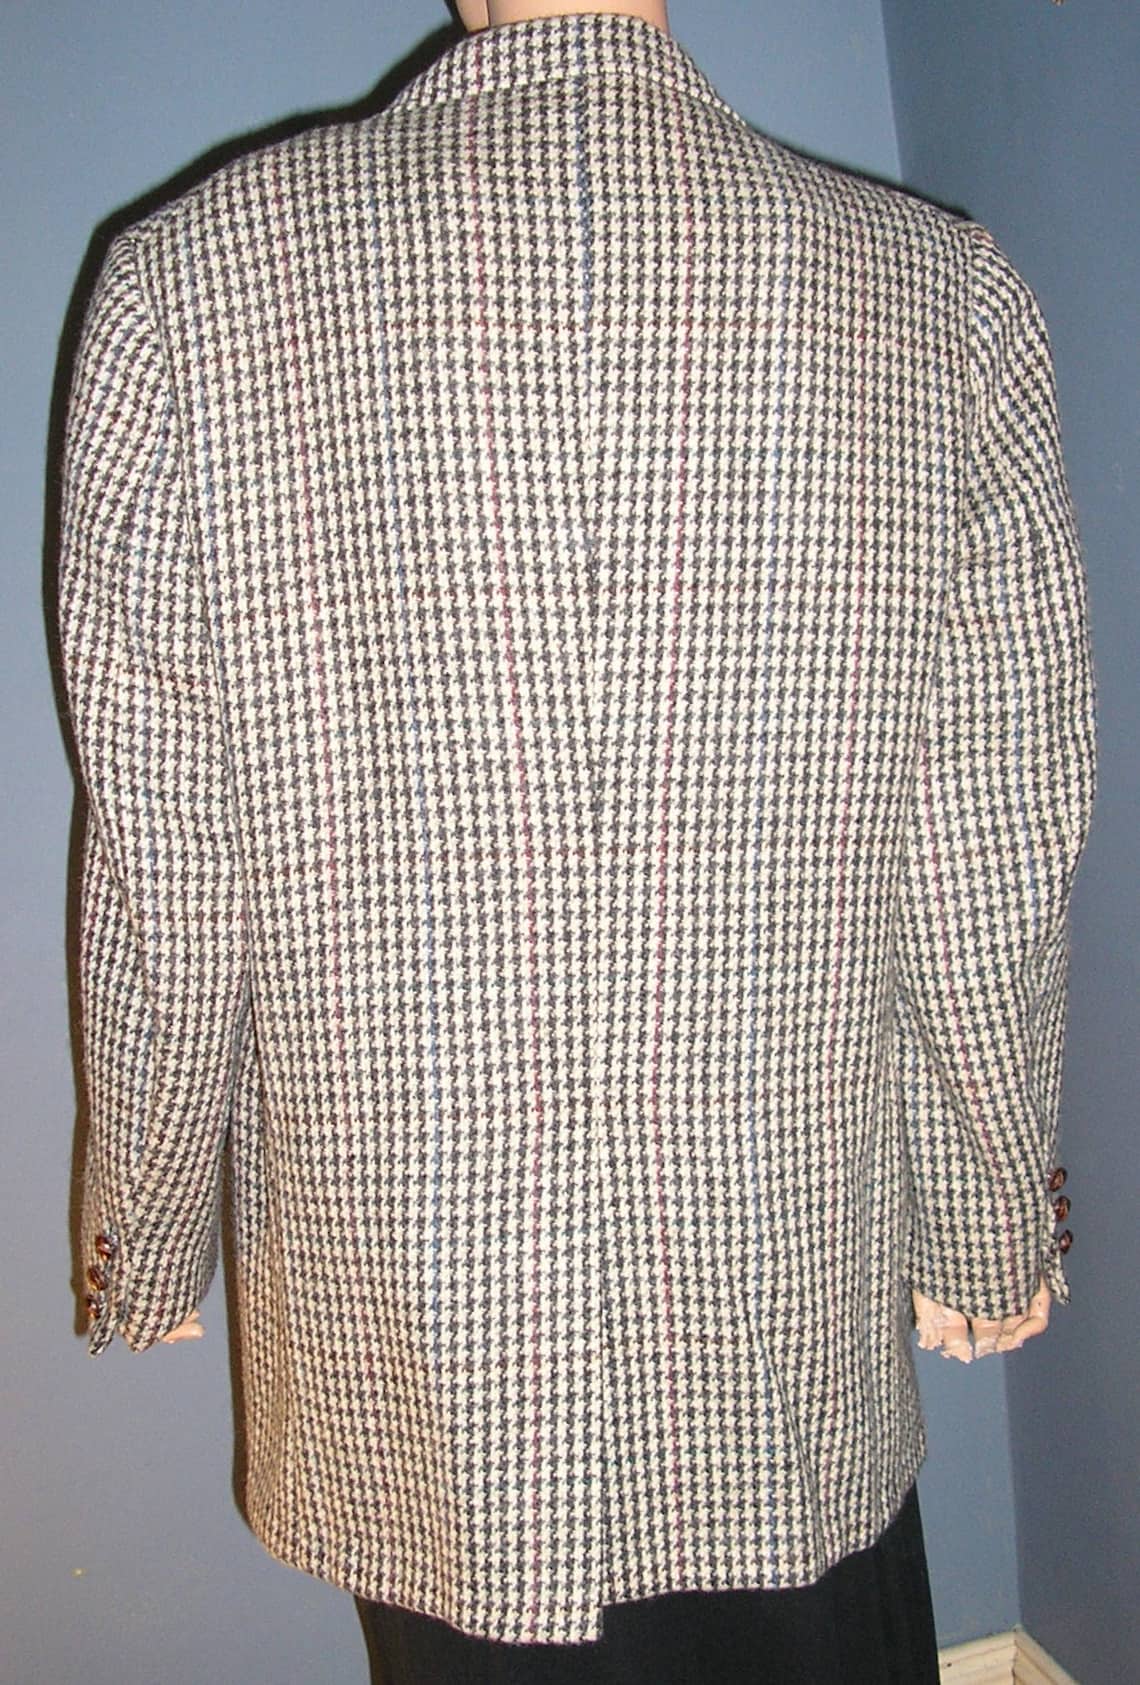 Vintage 80s Wool Herringbone Blazer Jacket Club Fellow - Etsy